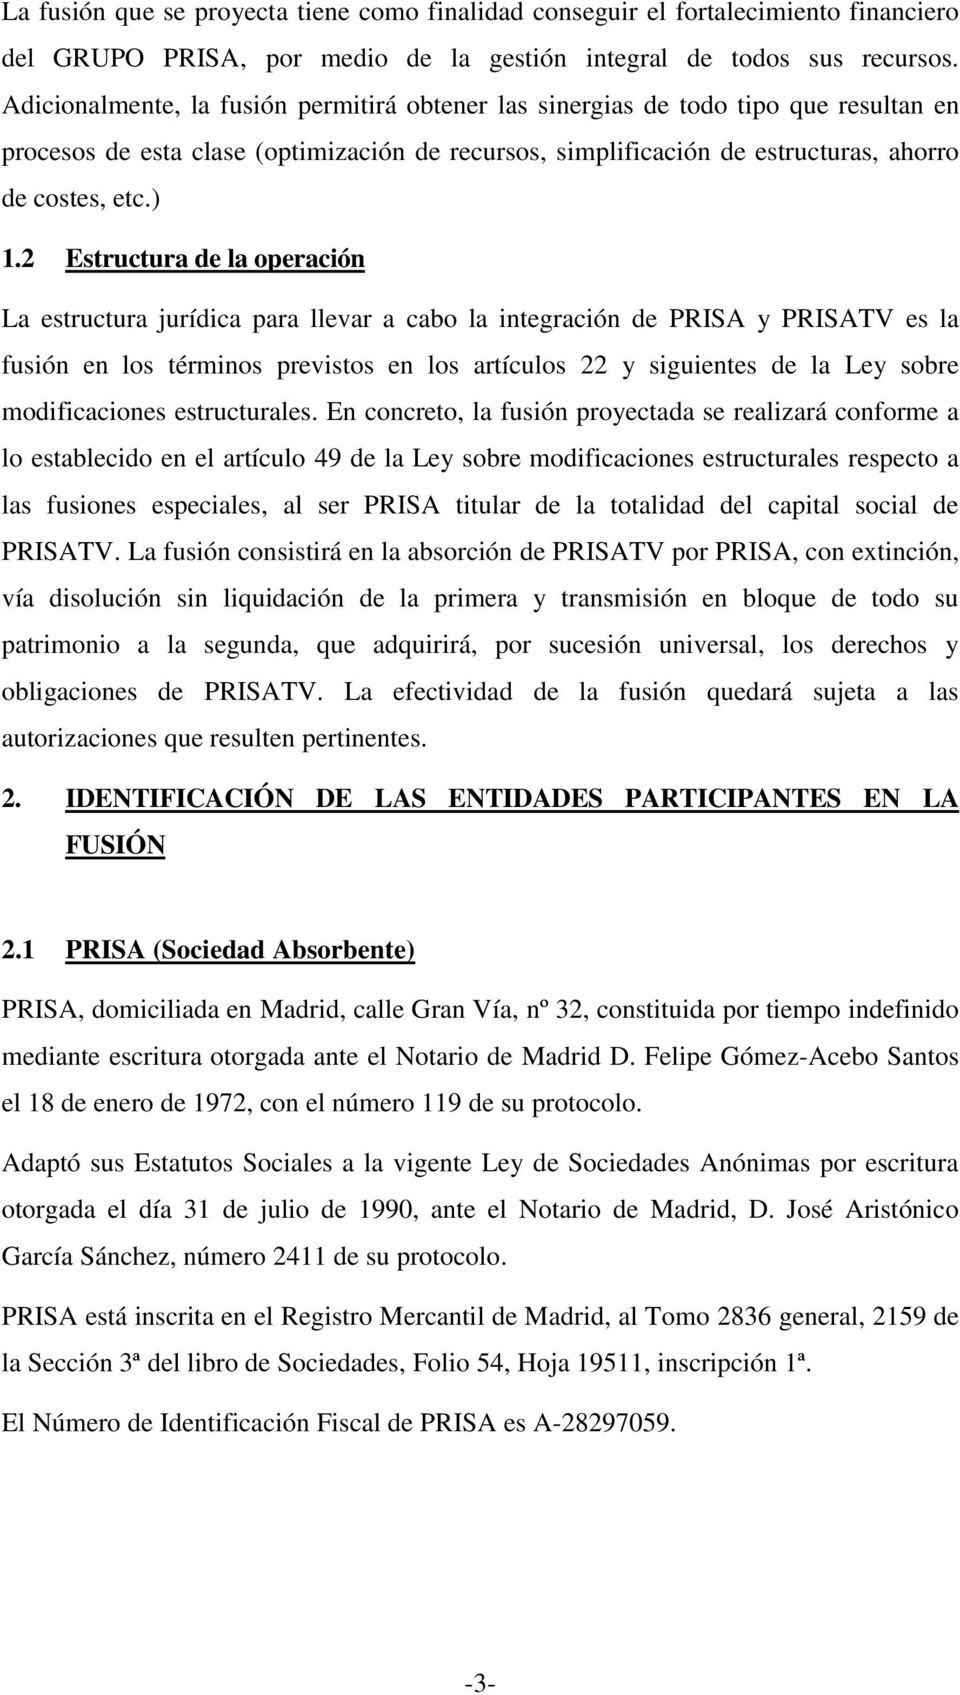 2 Estructura de la operación La estructura jurídica para llevar a cabo la integración de PRISA y PRISATV es la fusión en los términos previstos en los artículos 22 y siguientes de la Ley sobre